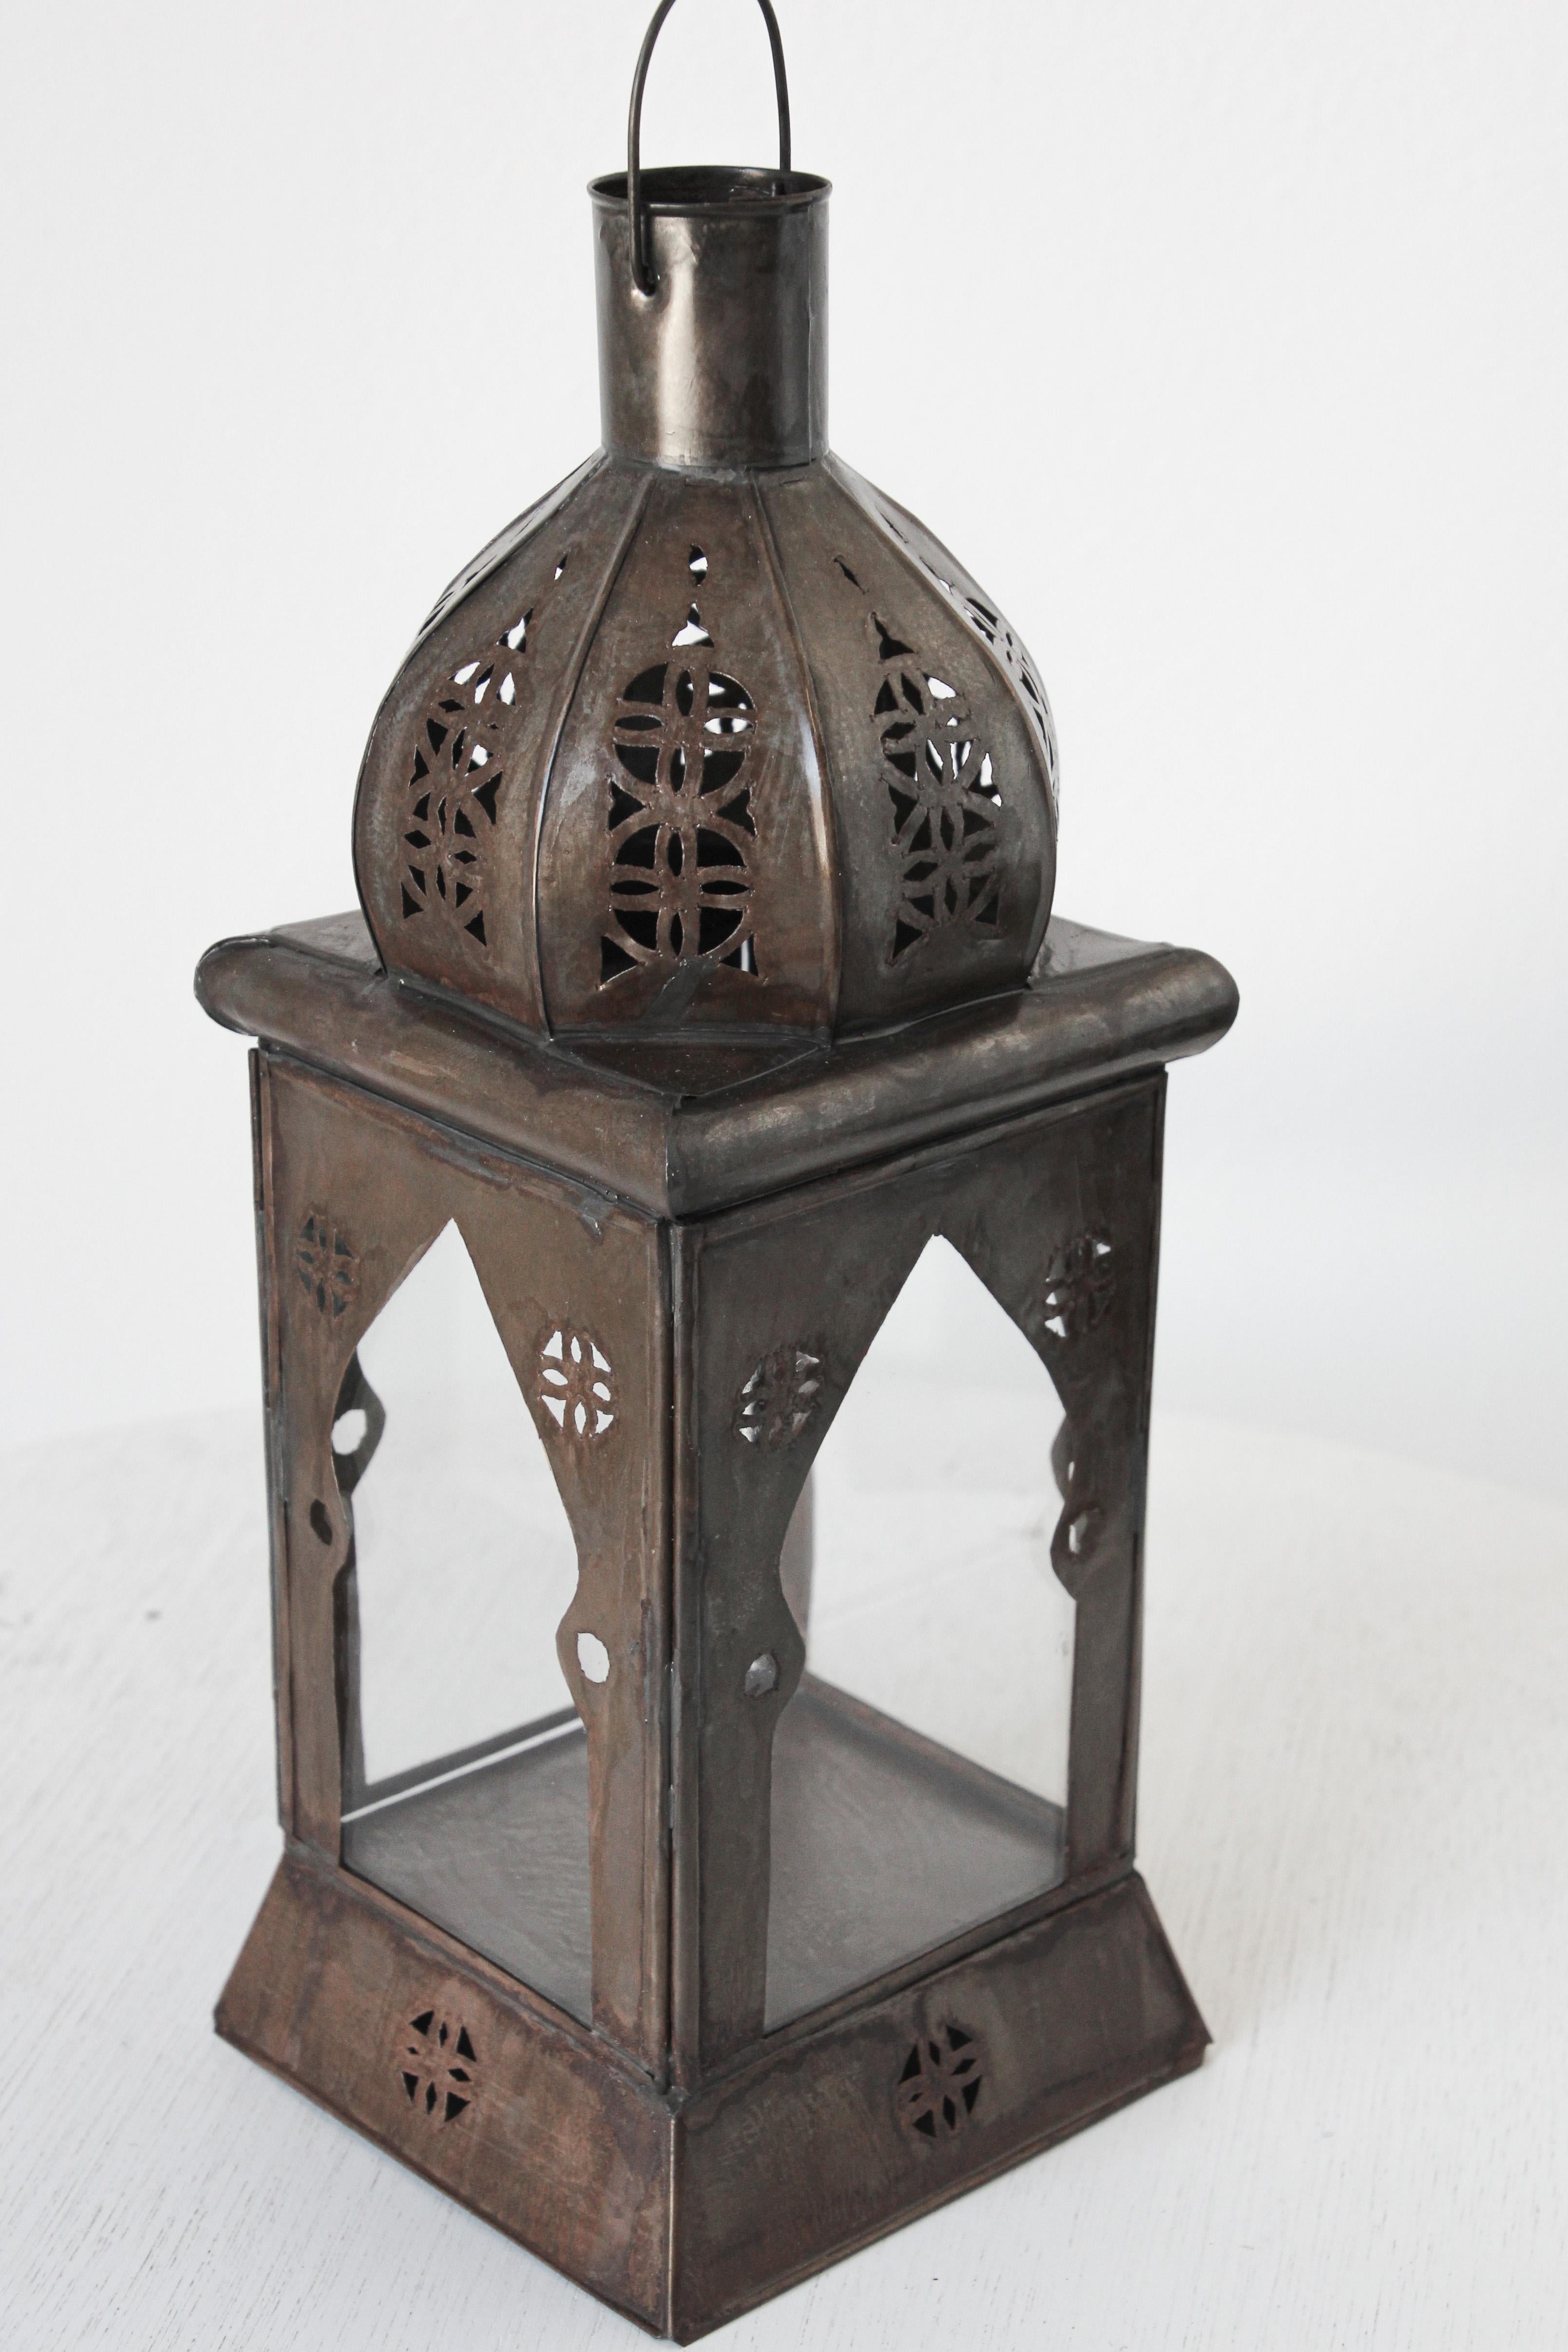 Petite lanterne marocaine en verre transparent fabriquée à la main et ornée d'un filigrane mauresque en métal ajouré.
Lampe à bougie tole ouragan avec un design ouvert en métal et un verre transparent.
A utiliser uniquement à l'intérieur ou dans un